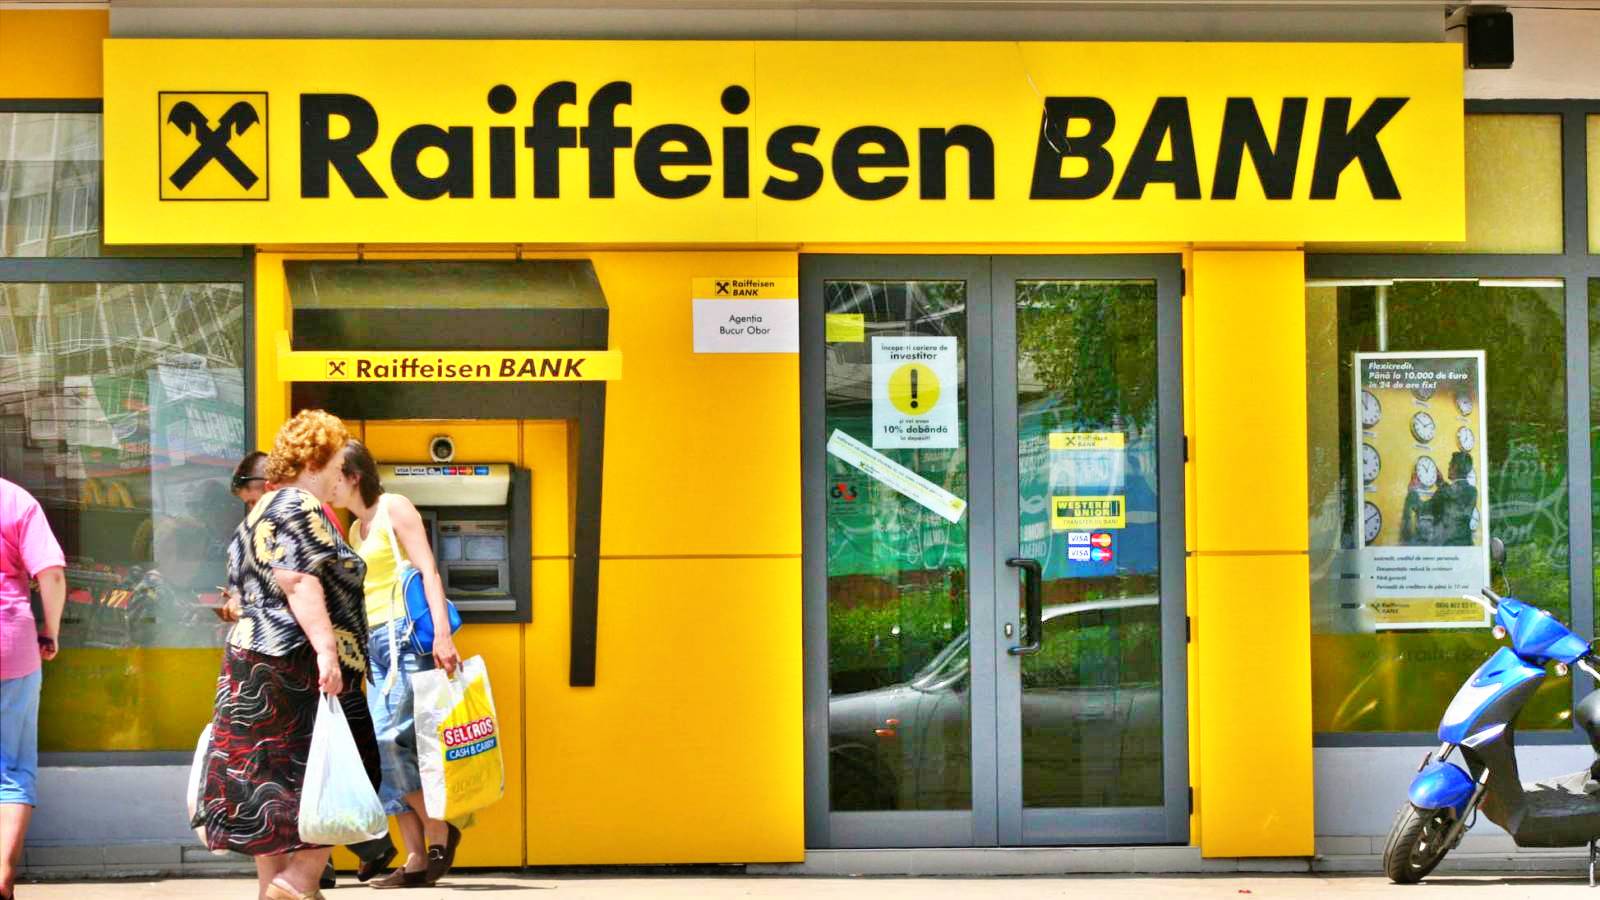 Raiffeisen Bank VIKTIGT meddelande till ALLA rumäner i hela landet